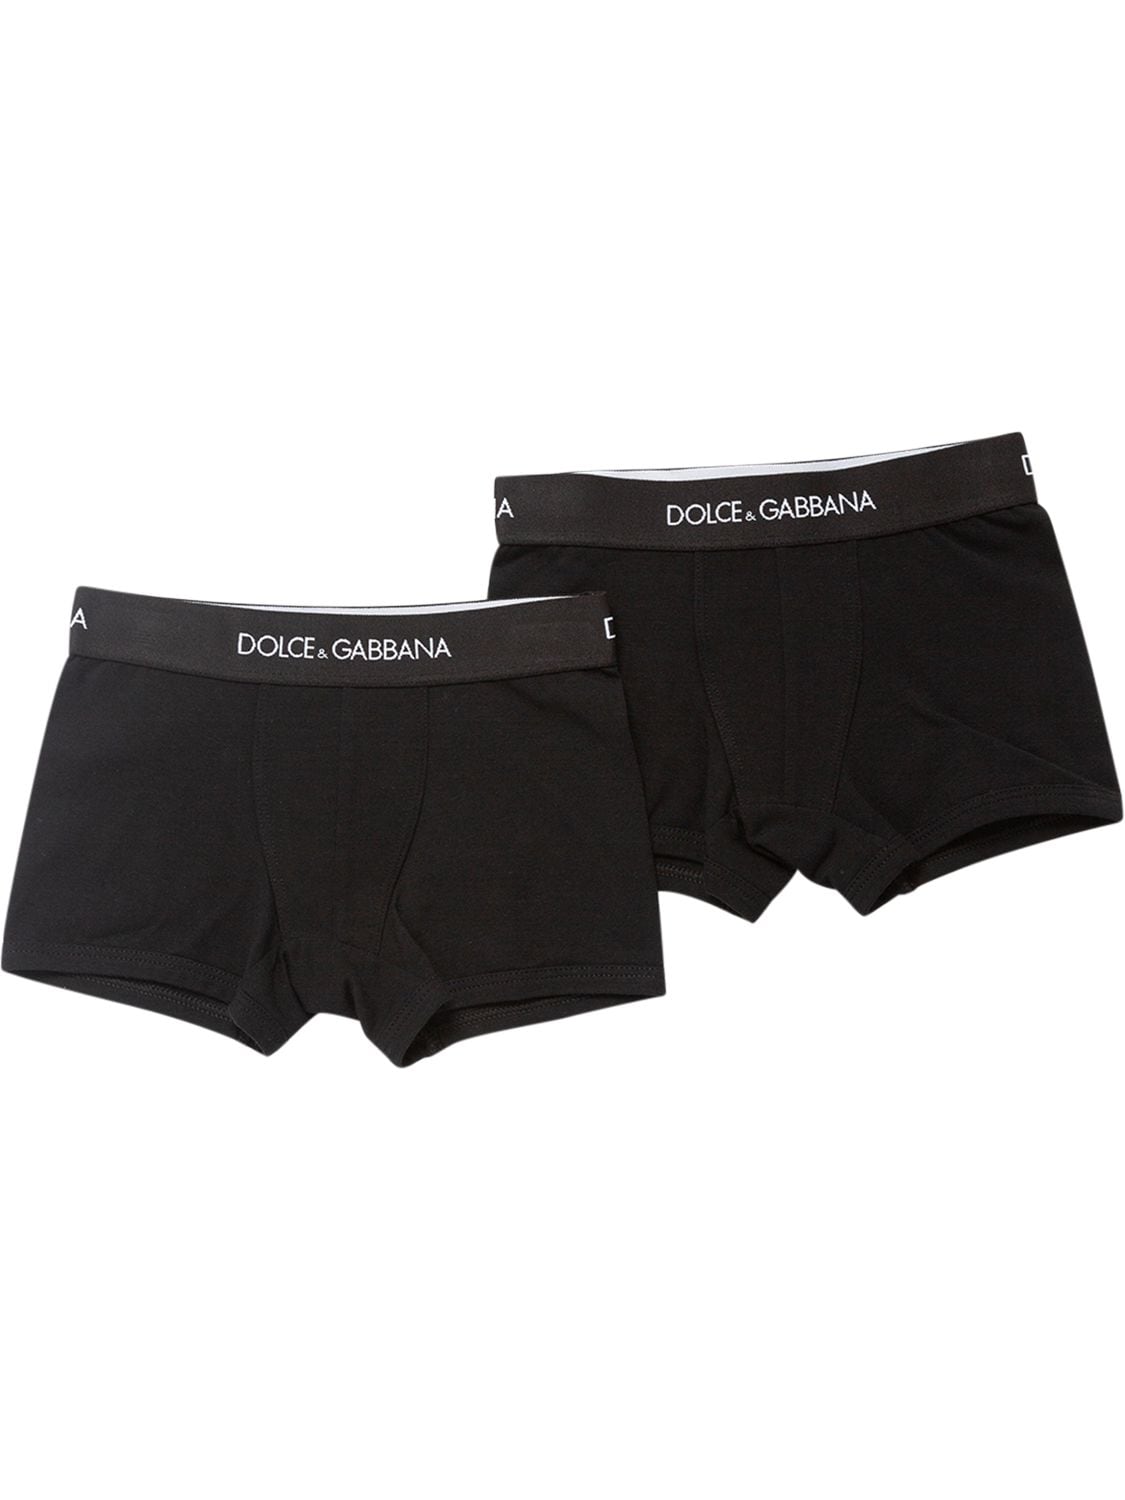 Dolce & Gabbana Kids' Set Of 2 Cotton Logo Boxer Briefs In Black